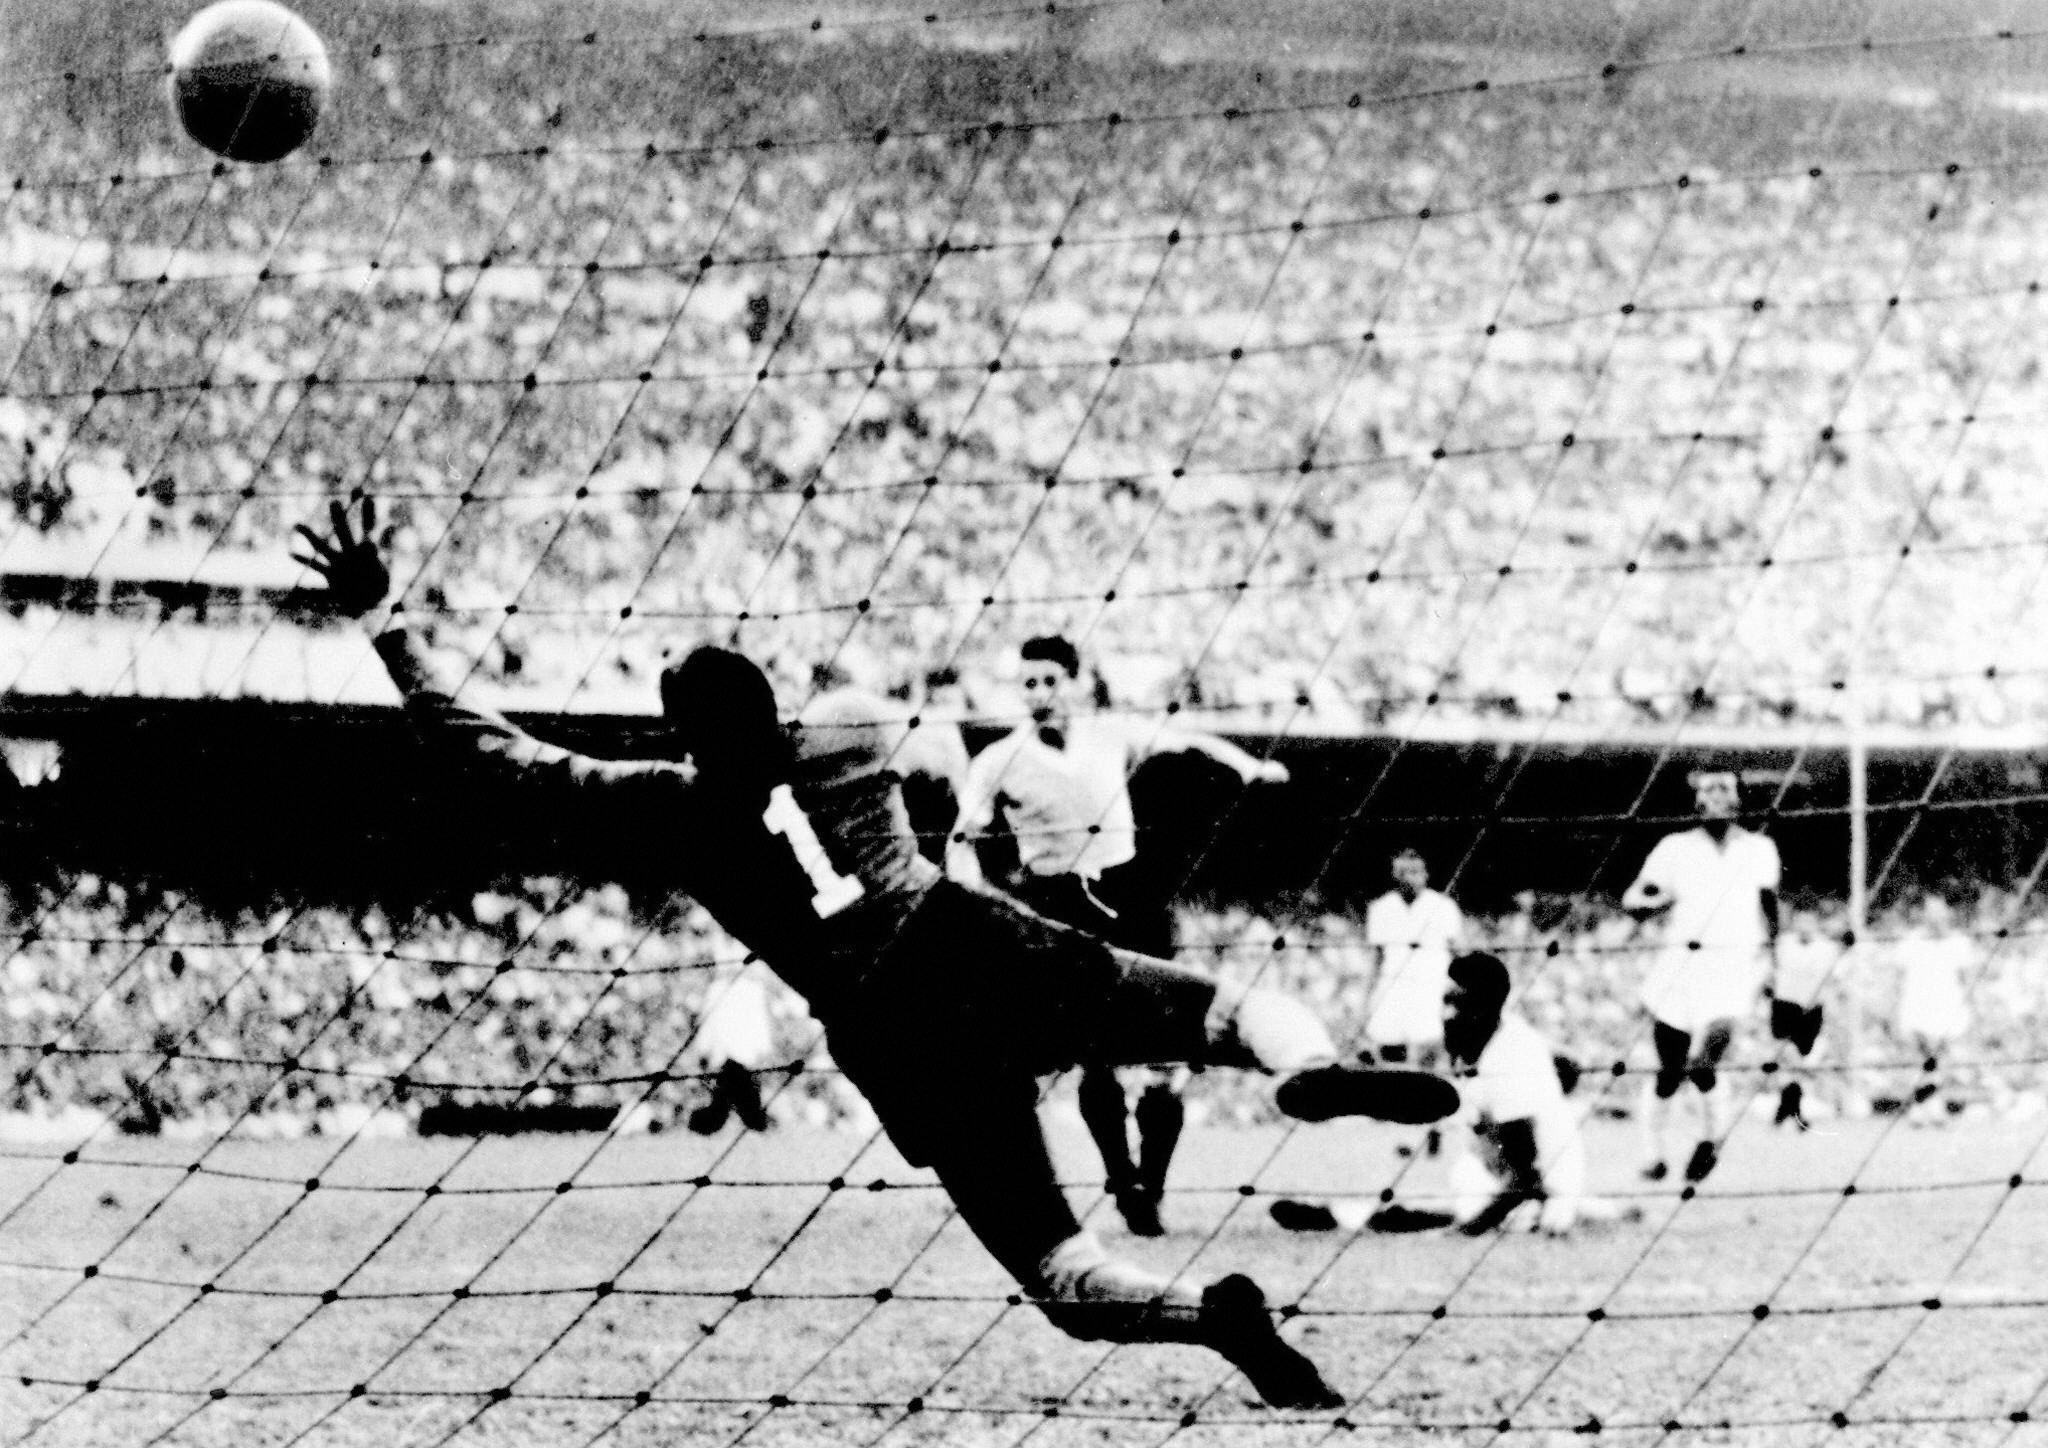 Foto de archivo tomada el 16 de julio de 1950 cuando el uruguayo Juan "Pepe" Schiaffino (C) anota  el primer gol contra Brasil durante la Copa del Mundo de 1950 en el estadio Maracana en el que Brasil perdió la final  2-1. (Foto Prensa Libre: AFP)